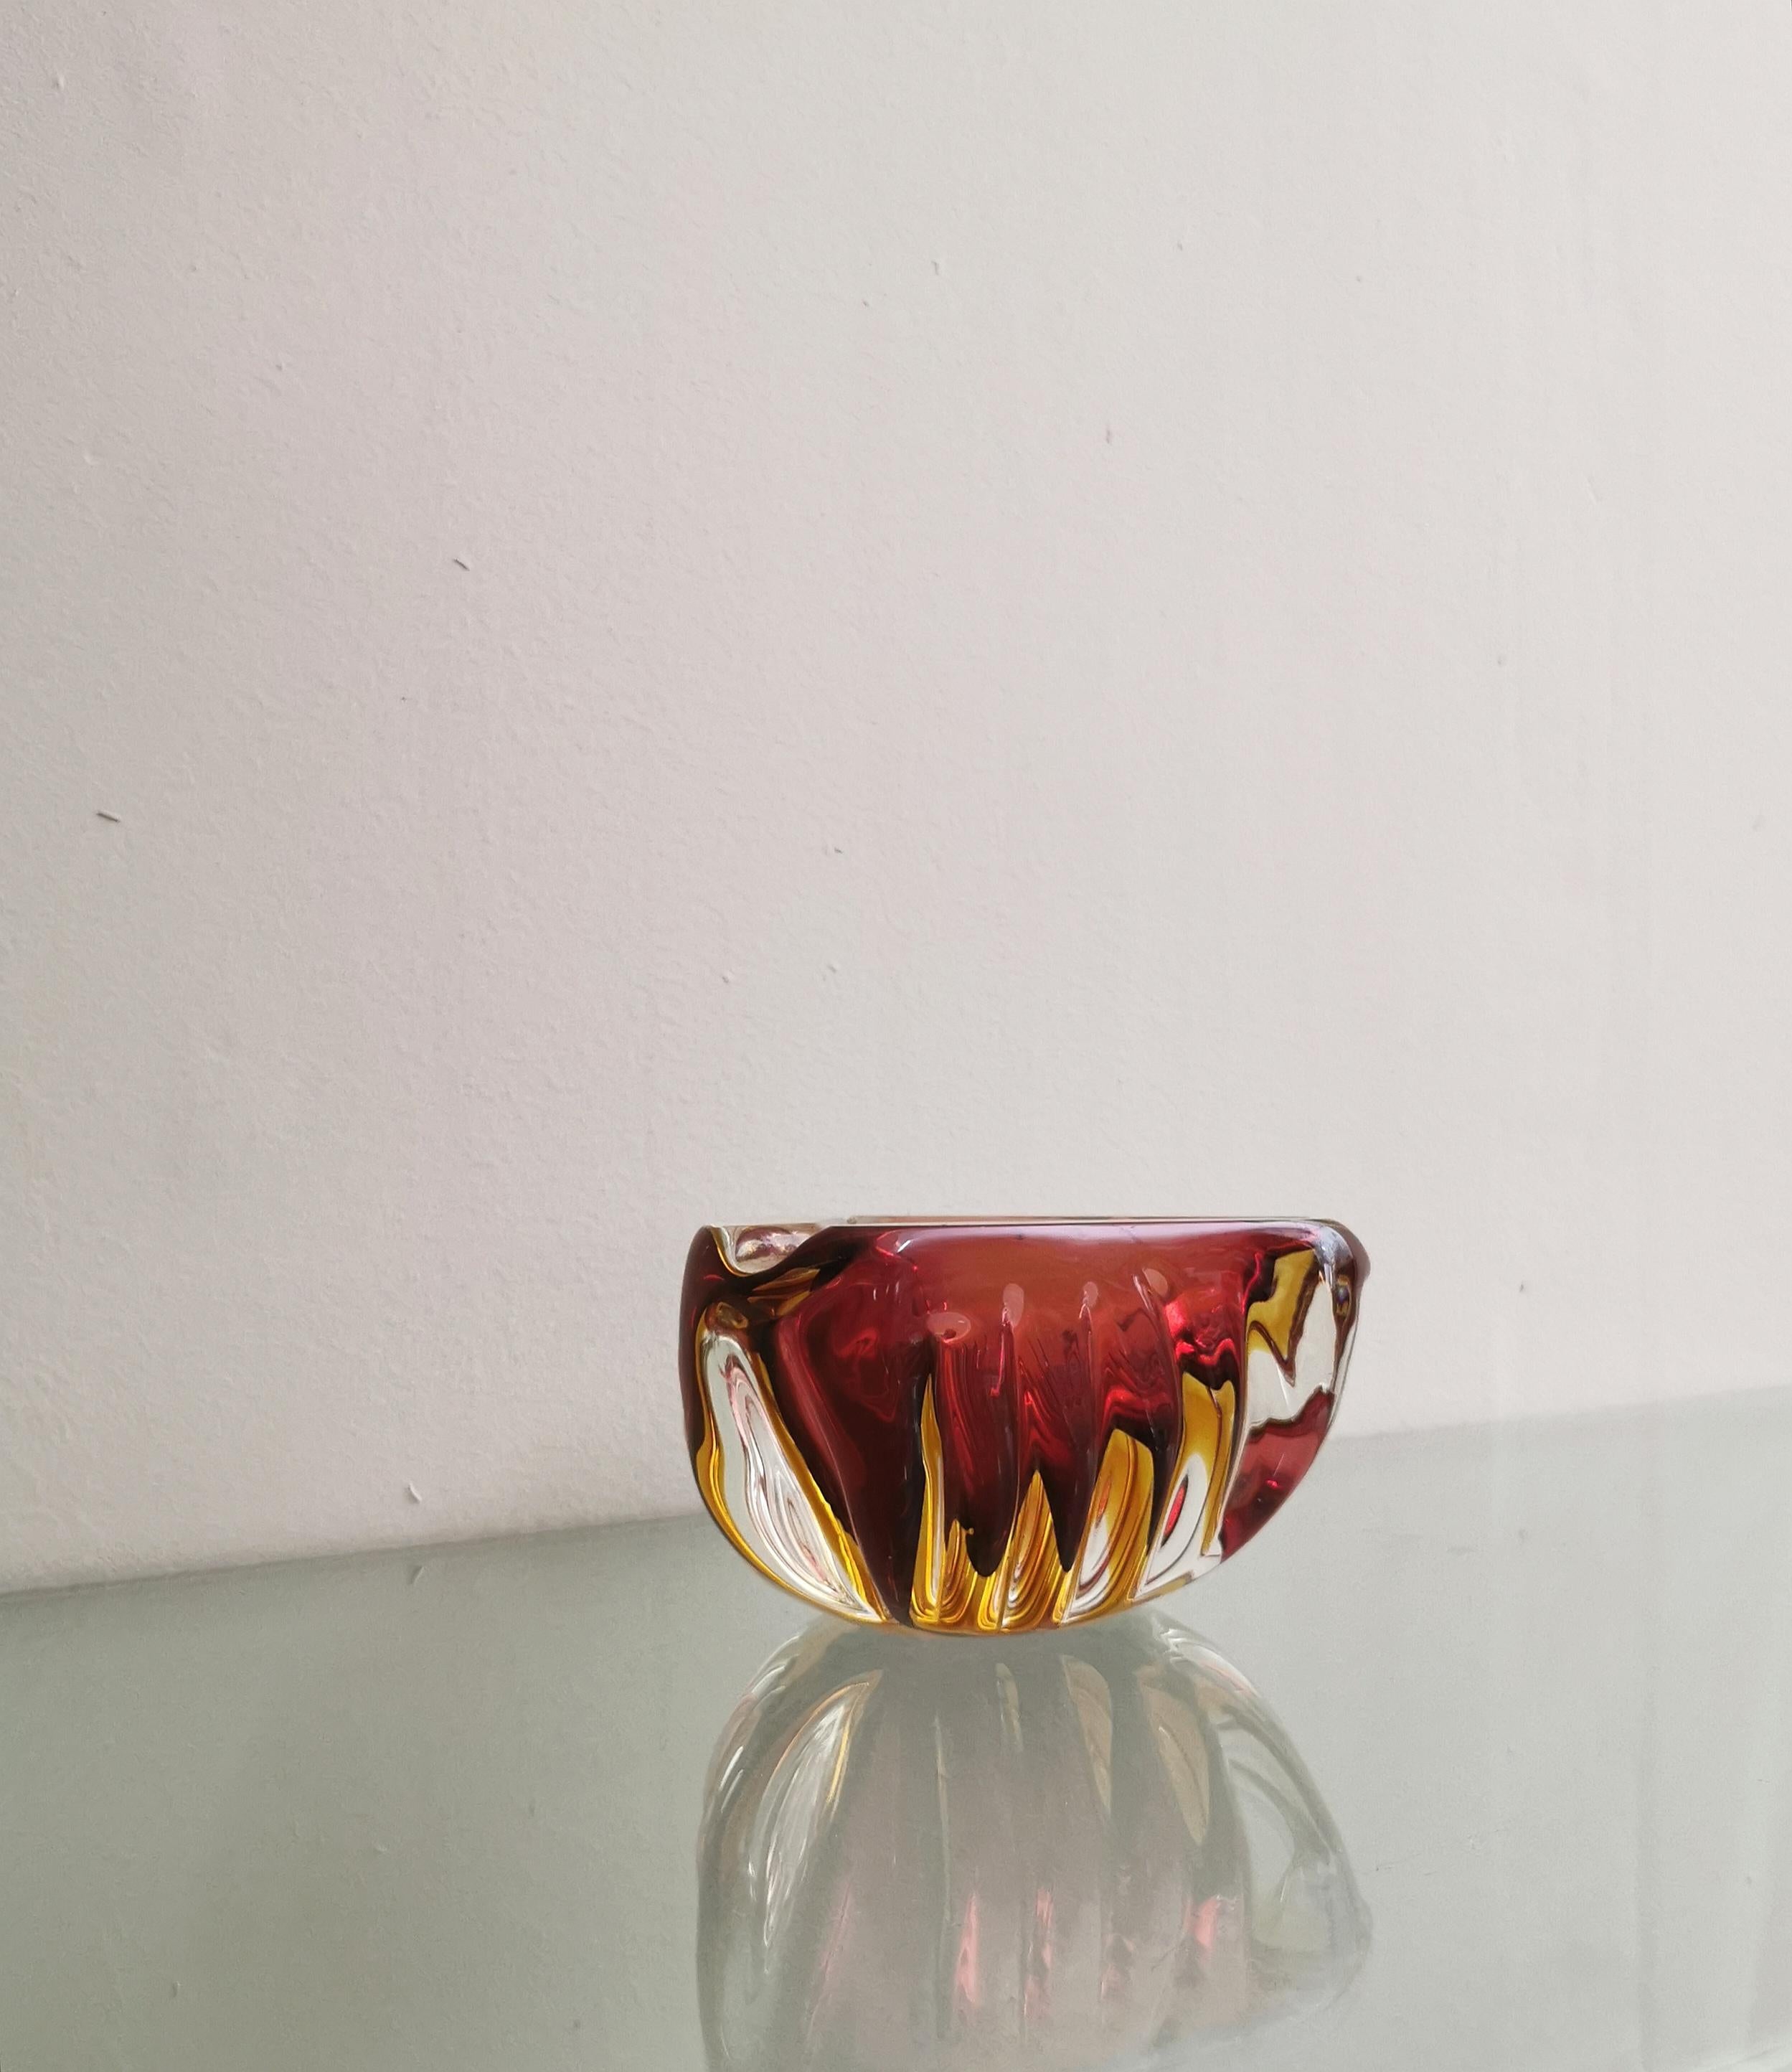 Murano Glass Ashtray Decorative Bowl Flavio Poli Midcentury Italian Design 1970s For Sale 3